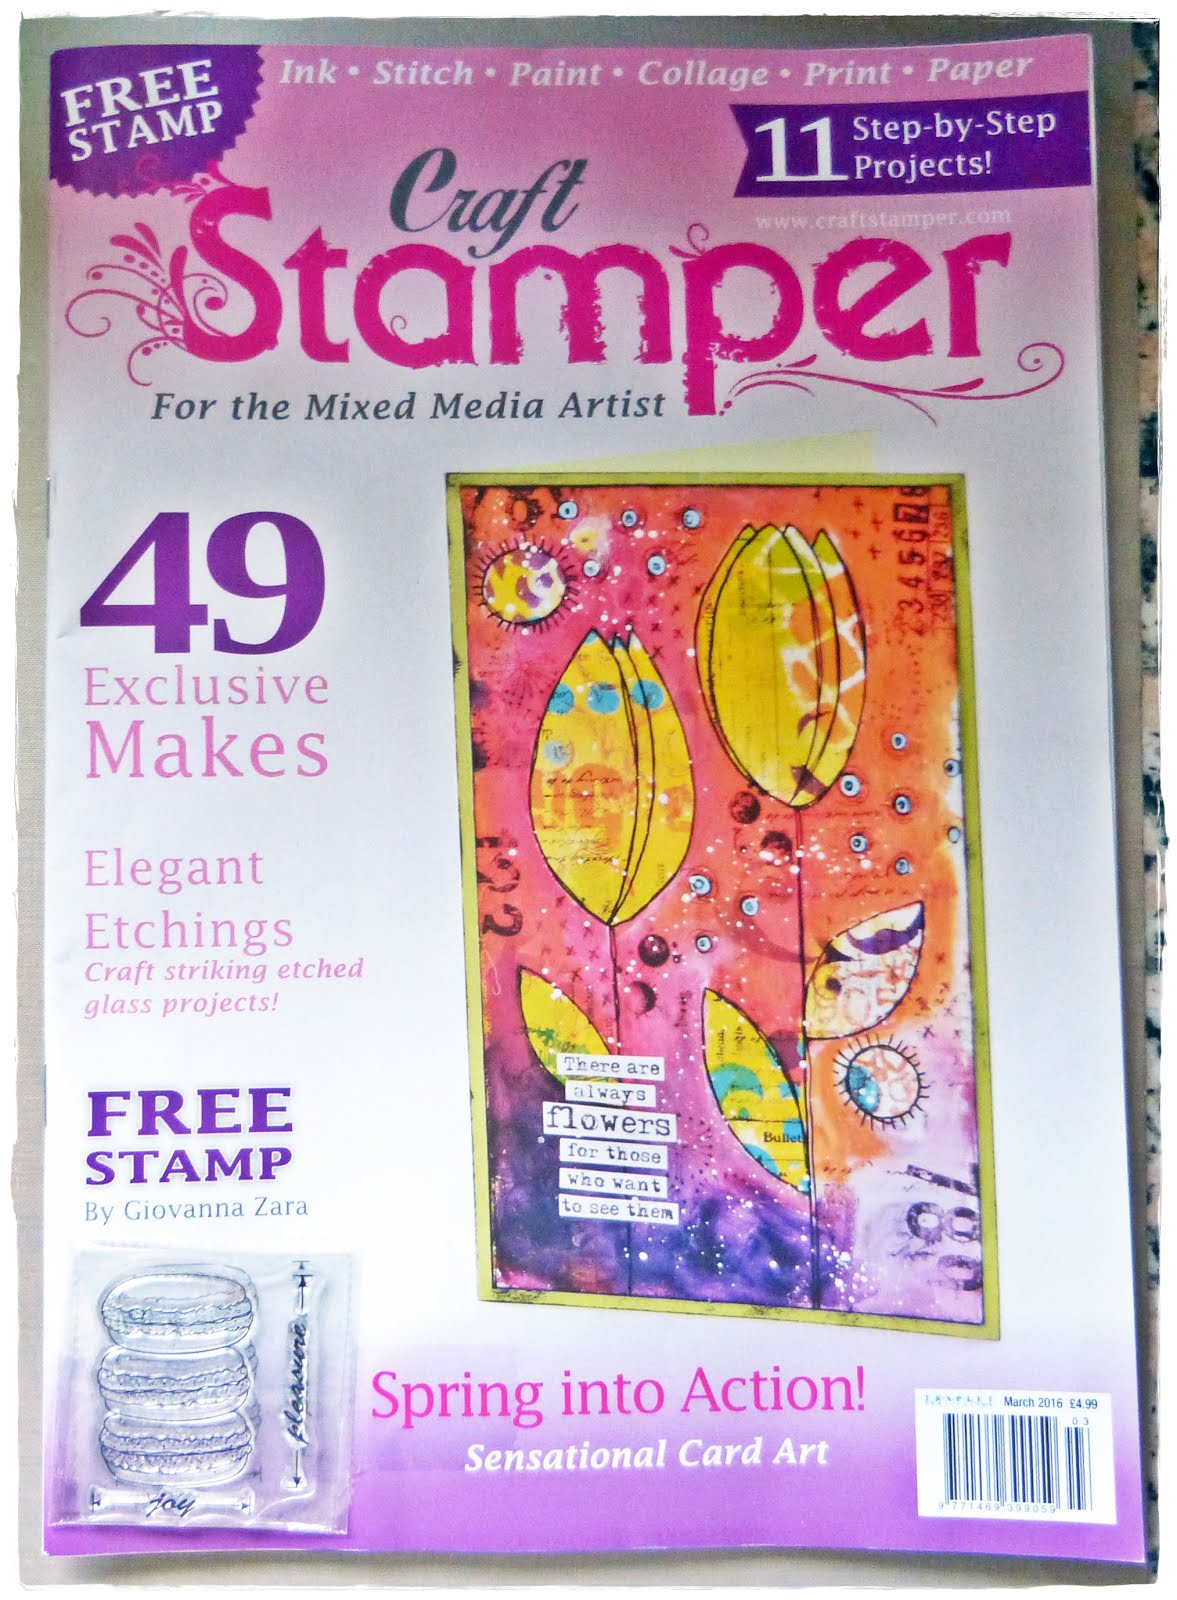 Published Craft Stamper Magazine